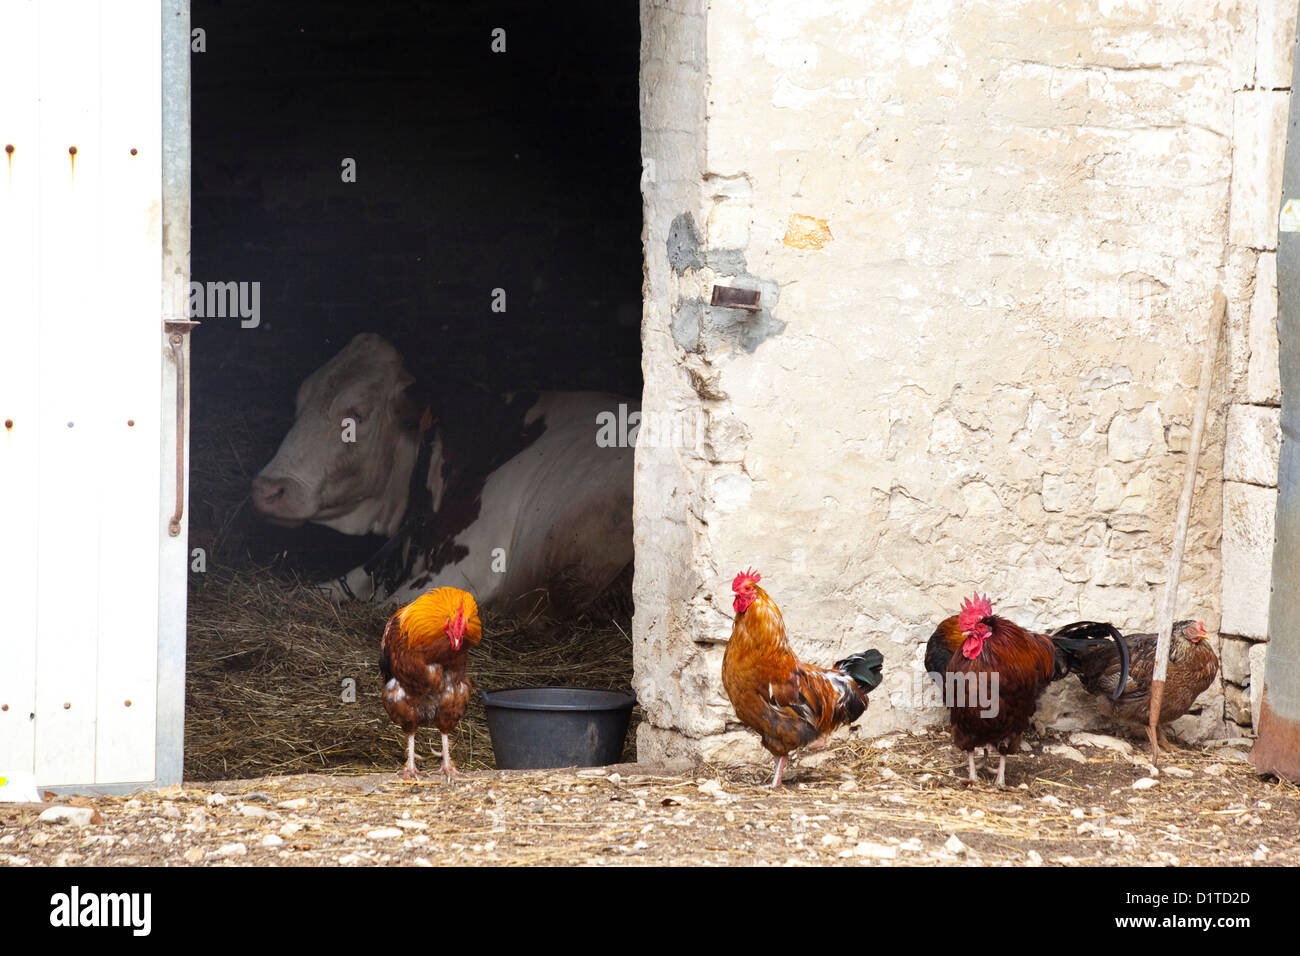 Immagine di aia. Una mucca si trova all'interno di un bianco fienile in mattoni colorati mentre i galli si raccolgono al di fuori della porta. Foto Stock